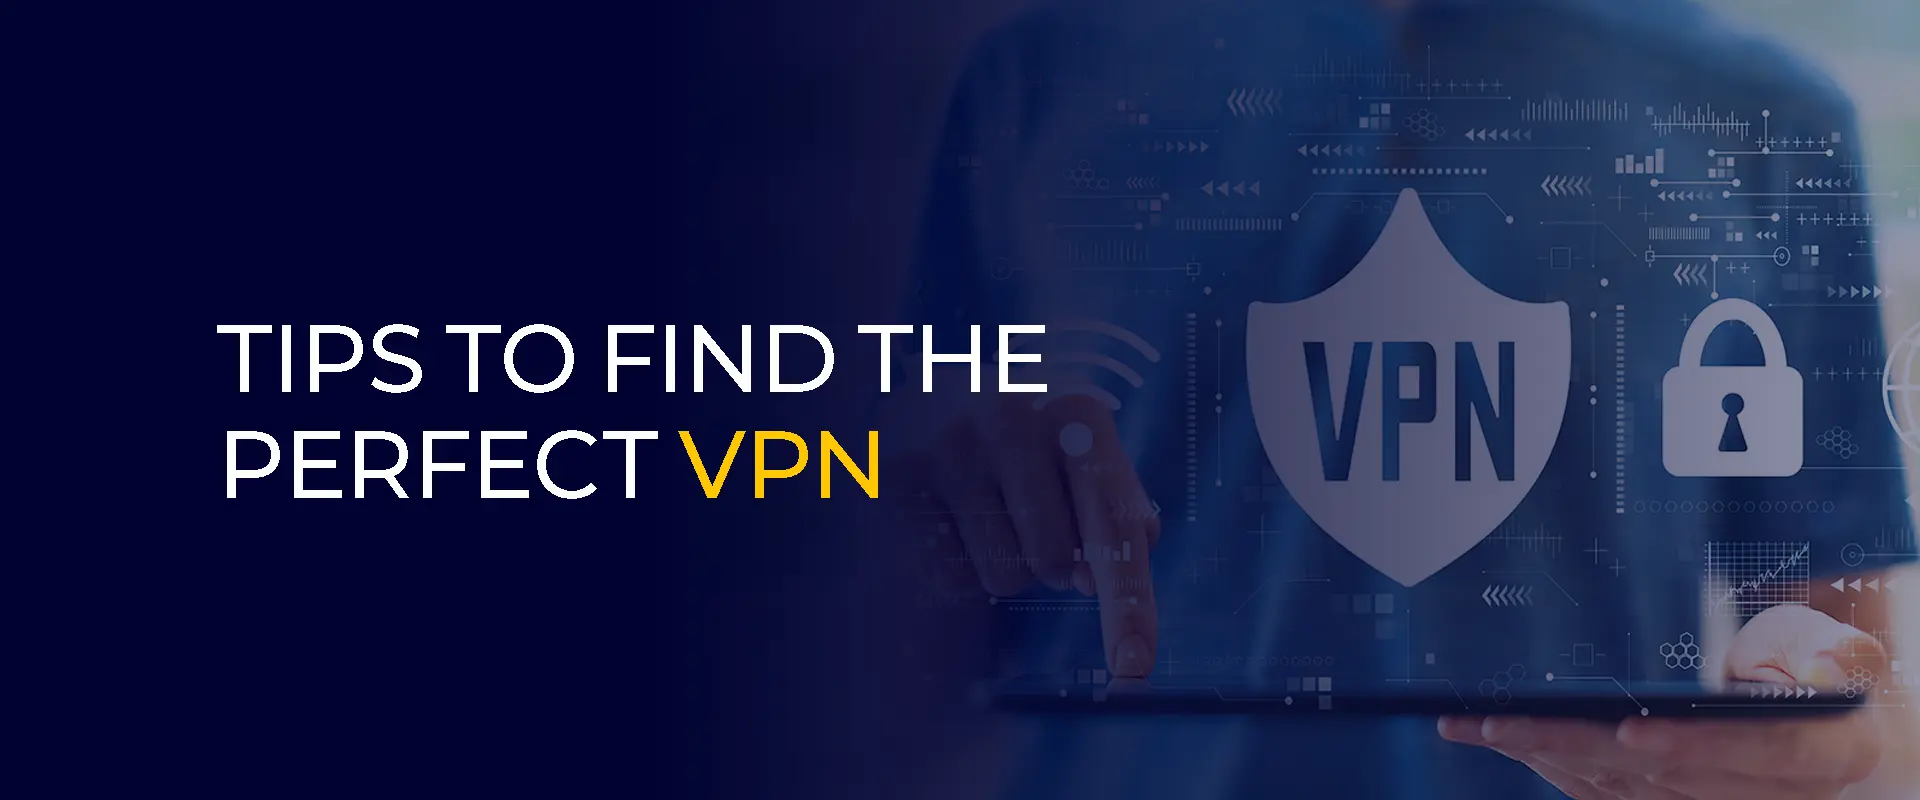 Tips för att hitta den perfekta VPN